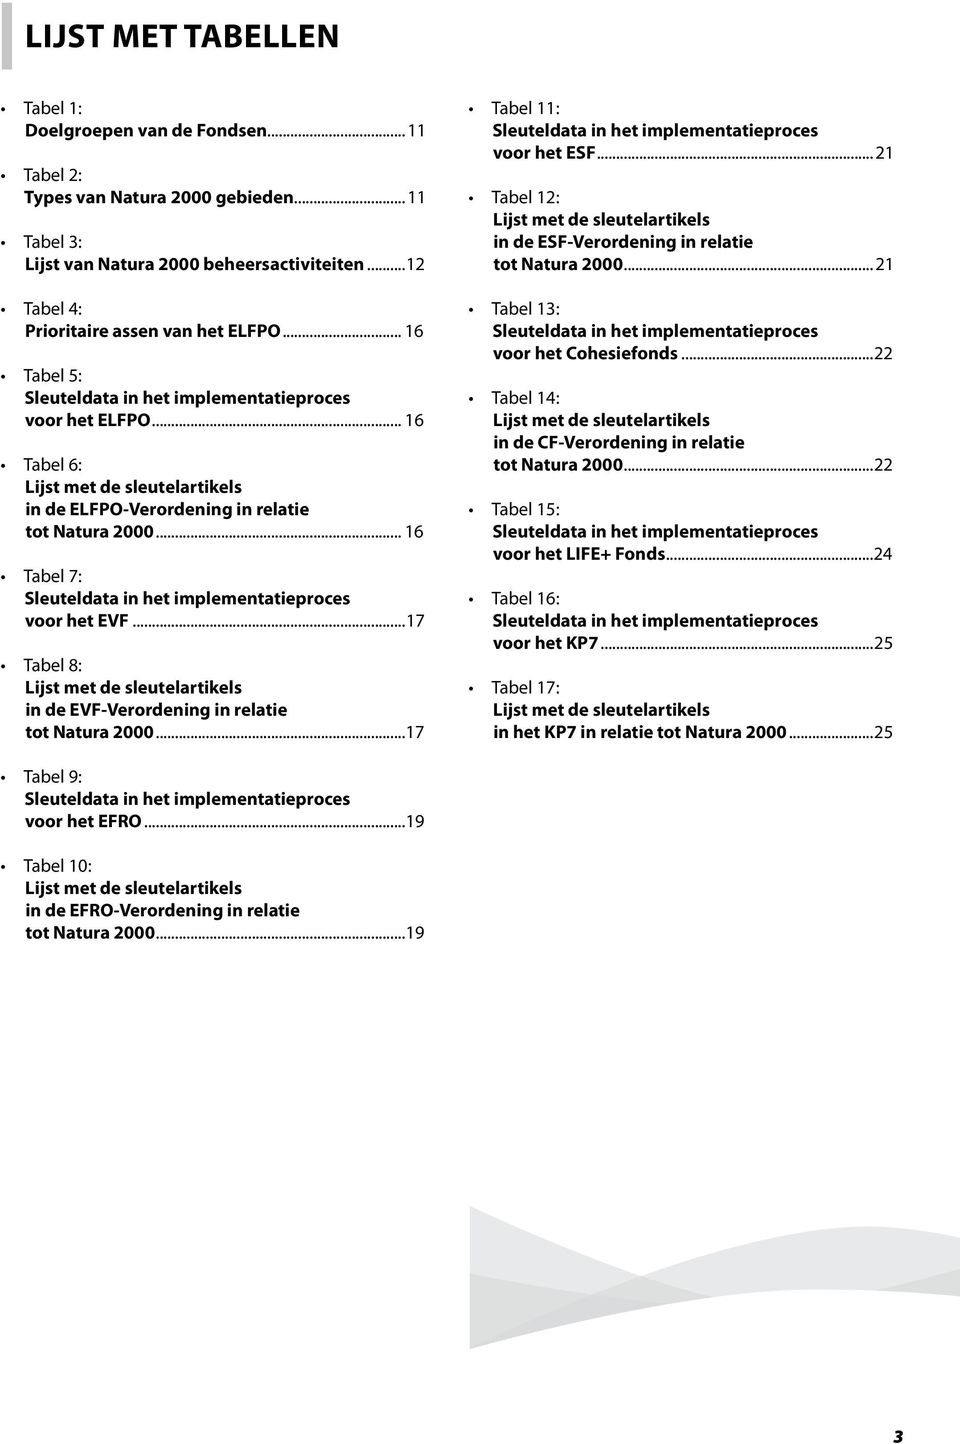 .. 16 Tabel 7: Sleuteldata in het implementatieproces voor het EVF...17 Tabel 8: Lijst met de sleutelartikels in de EVF-Verordening in relatie tot Natura 2000.